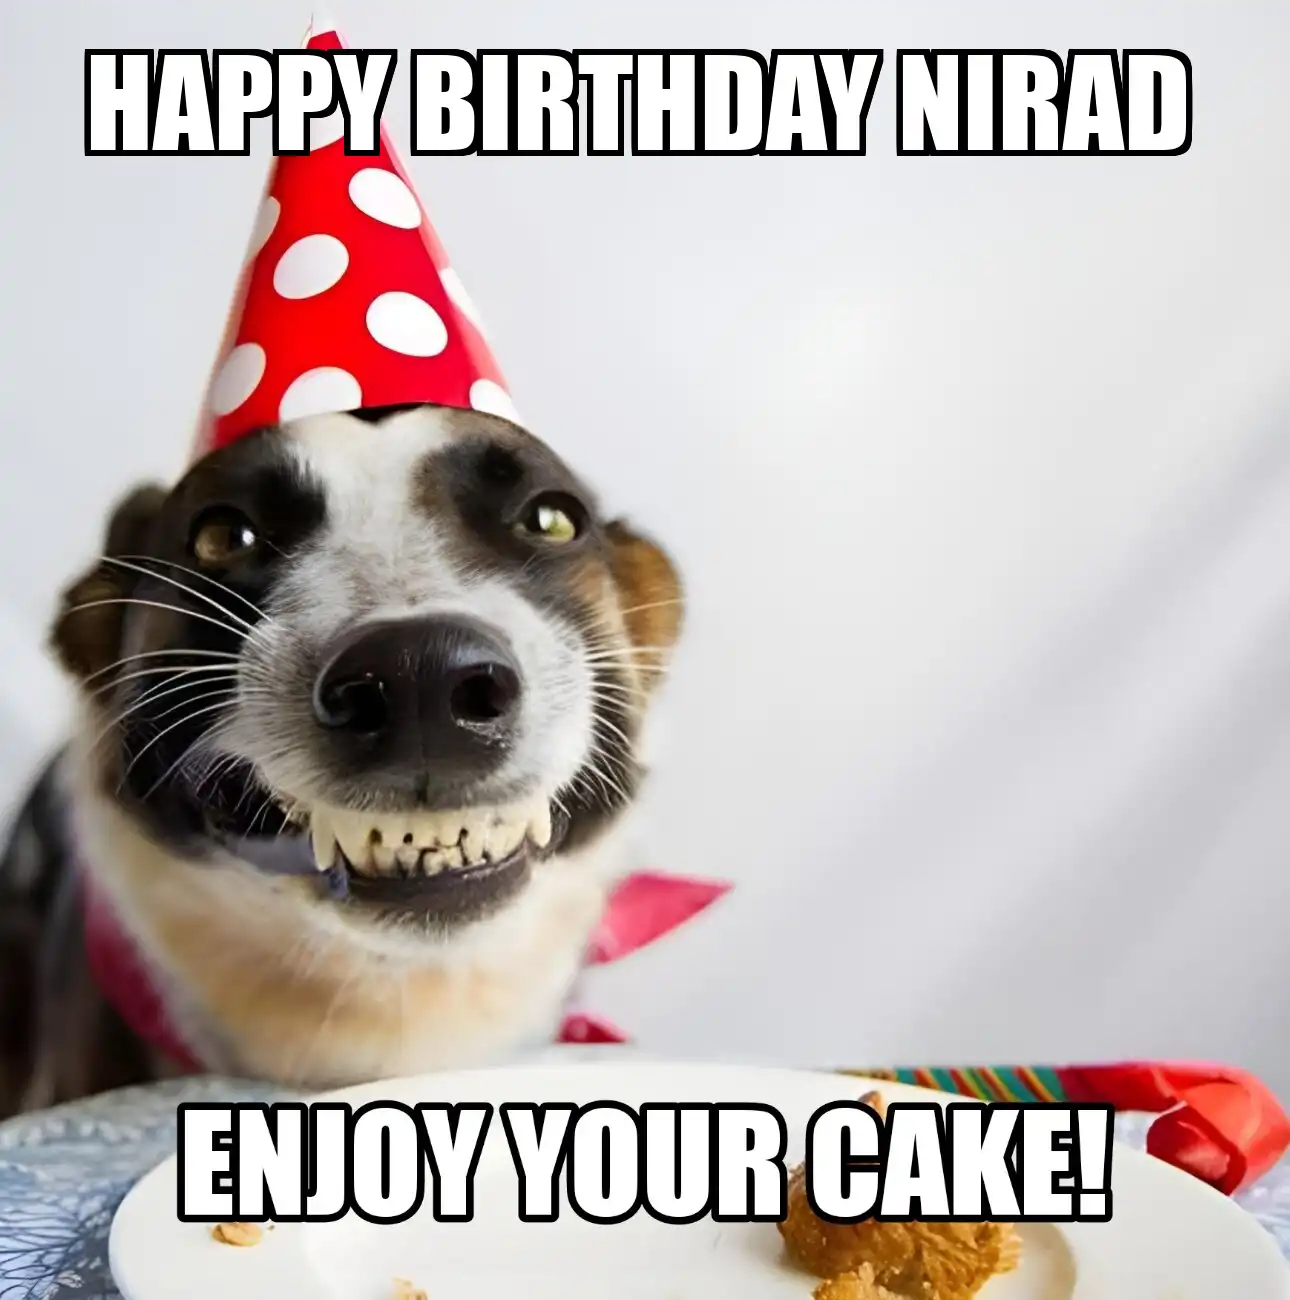 Happy Birthday Nirad Enjoy Your Cake Dog Meme